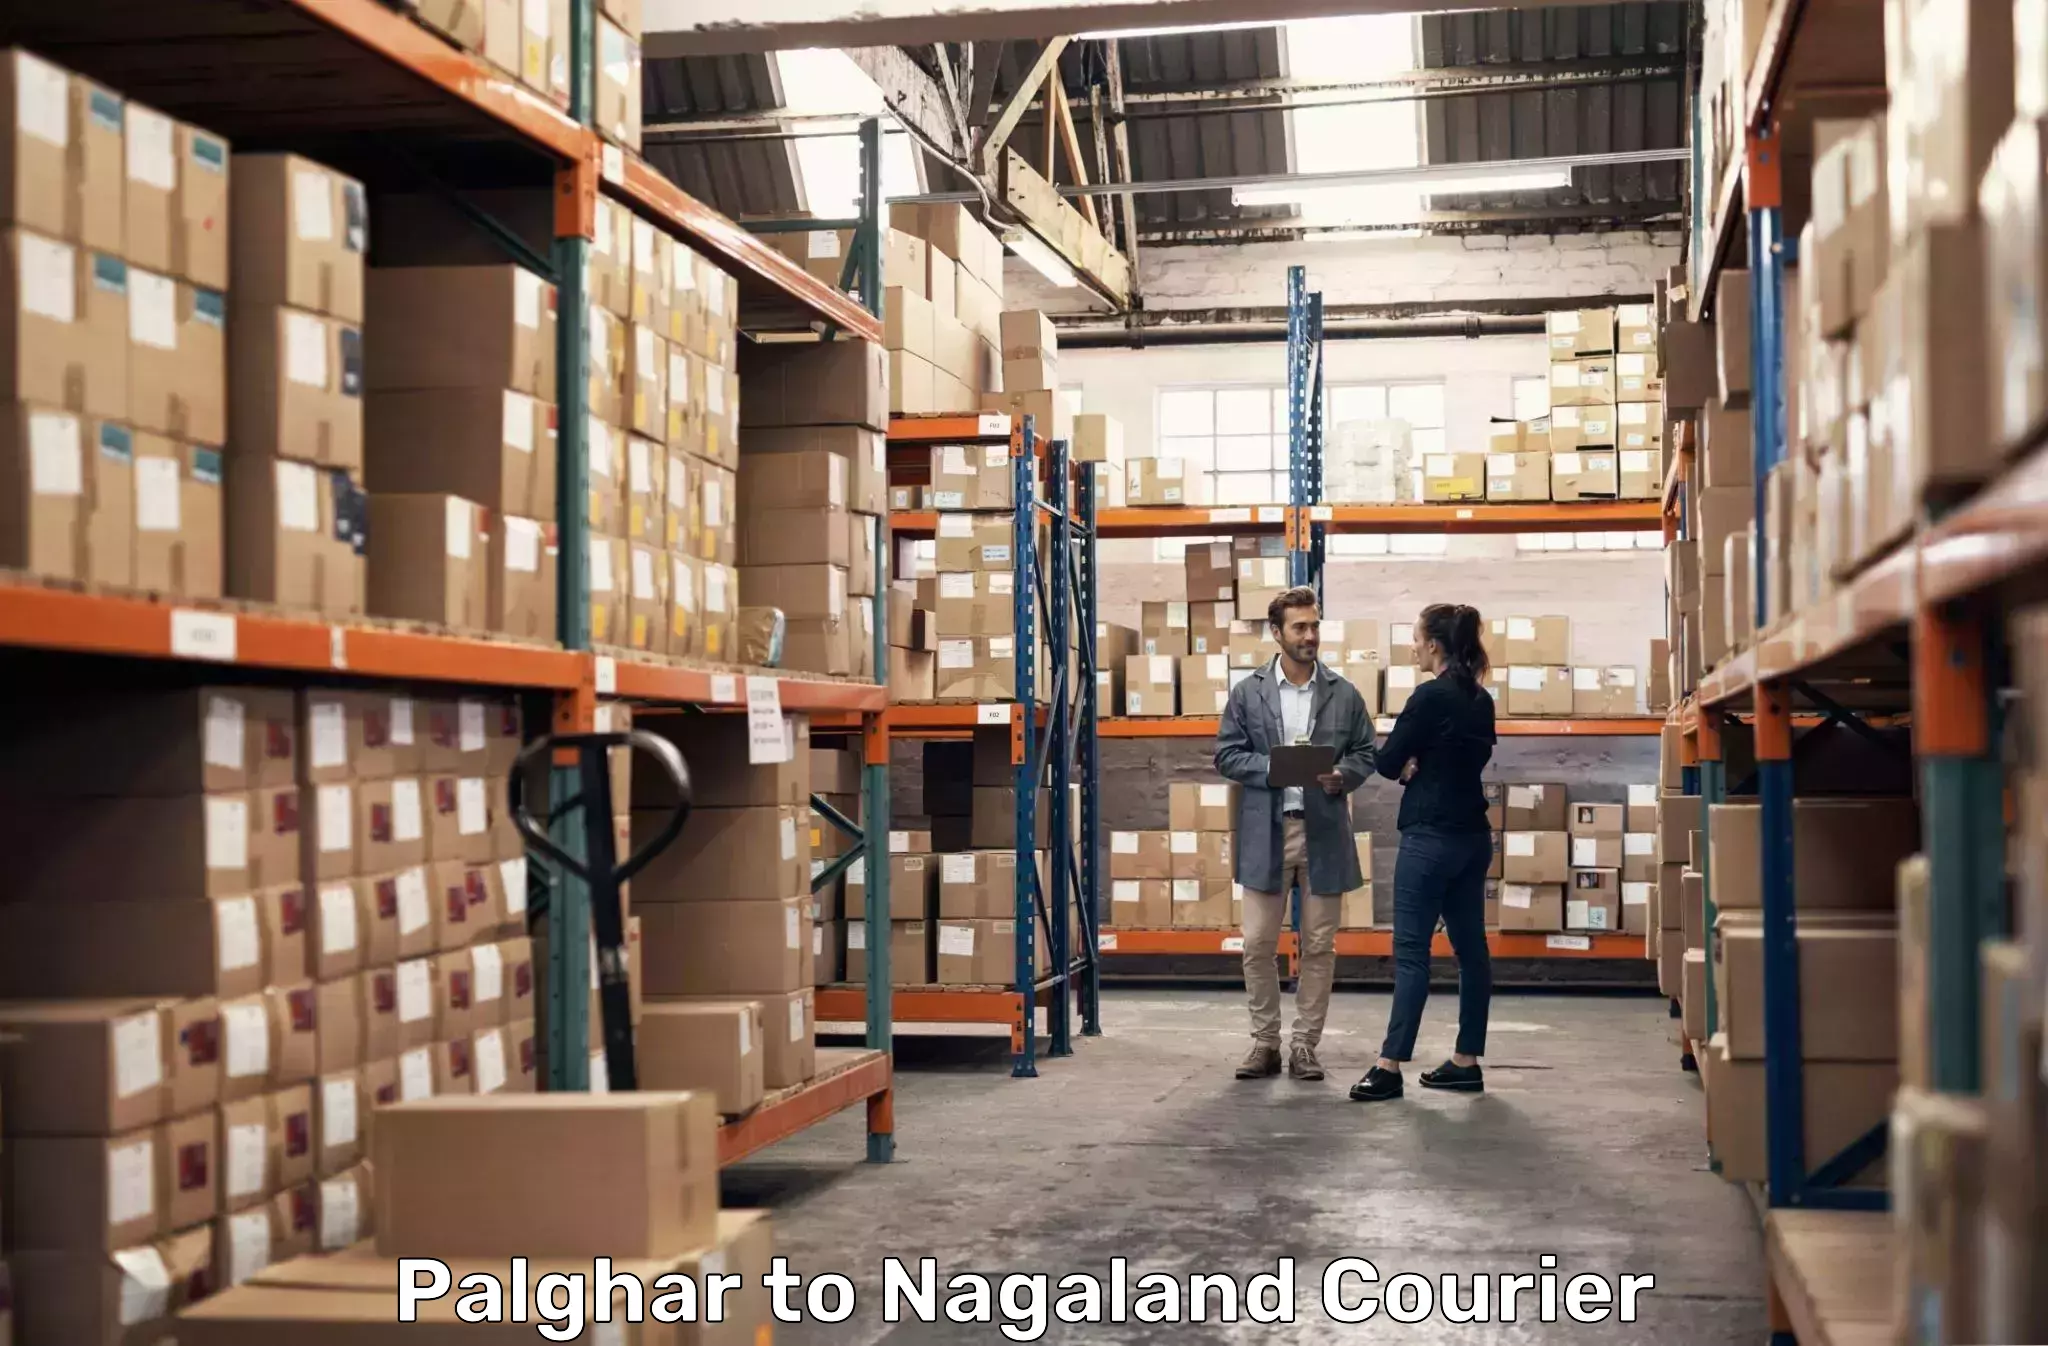 Advanced courier platforms Palghar to Nagaland